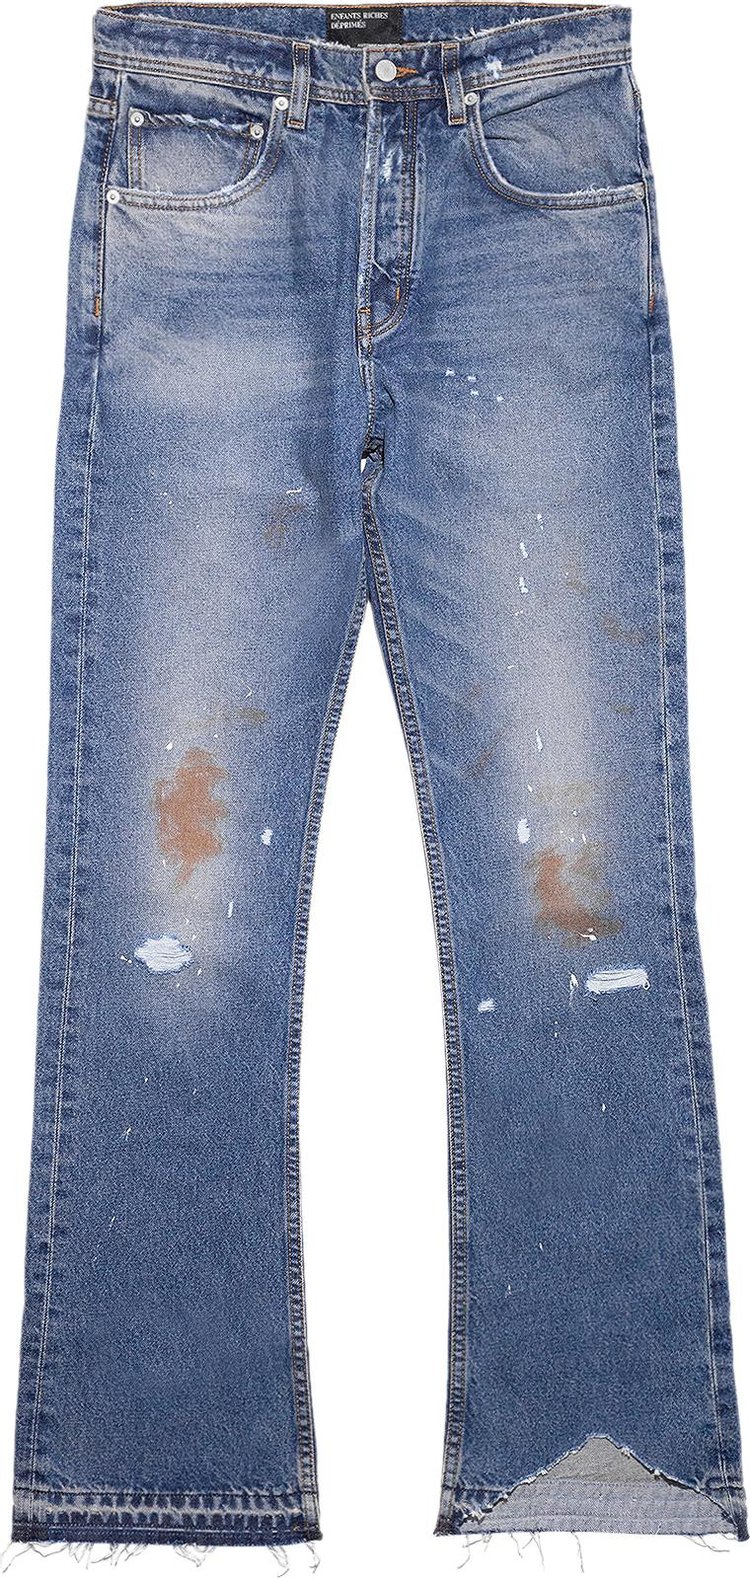 Enfants Riches Déprimés Flare Jeans 'Washed Medium Blue'